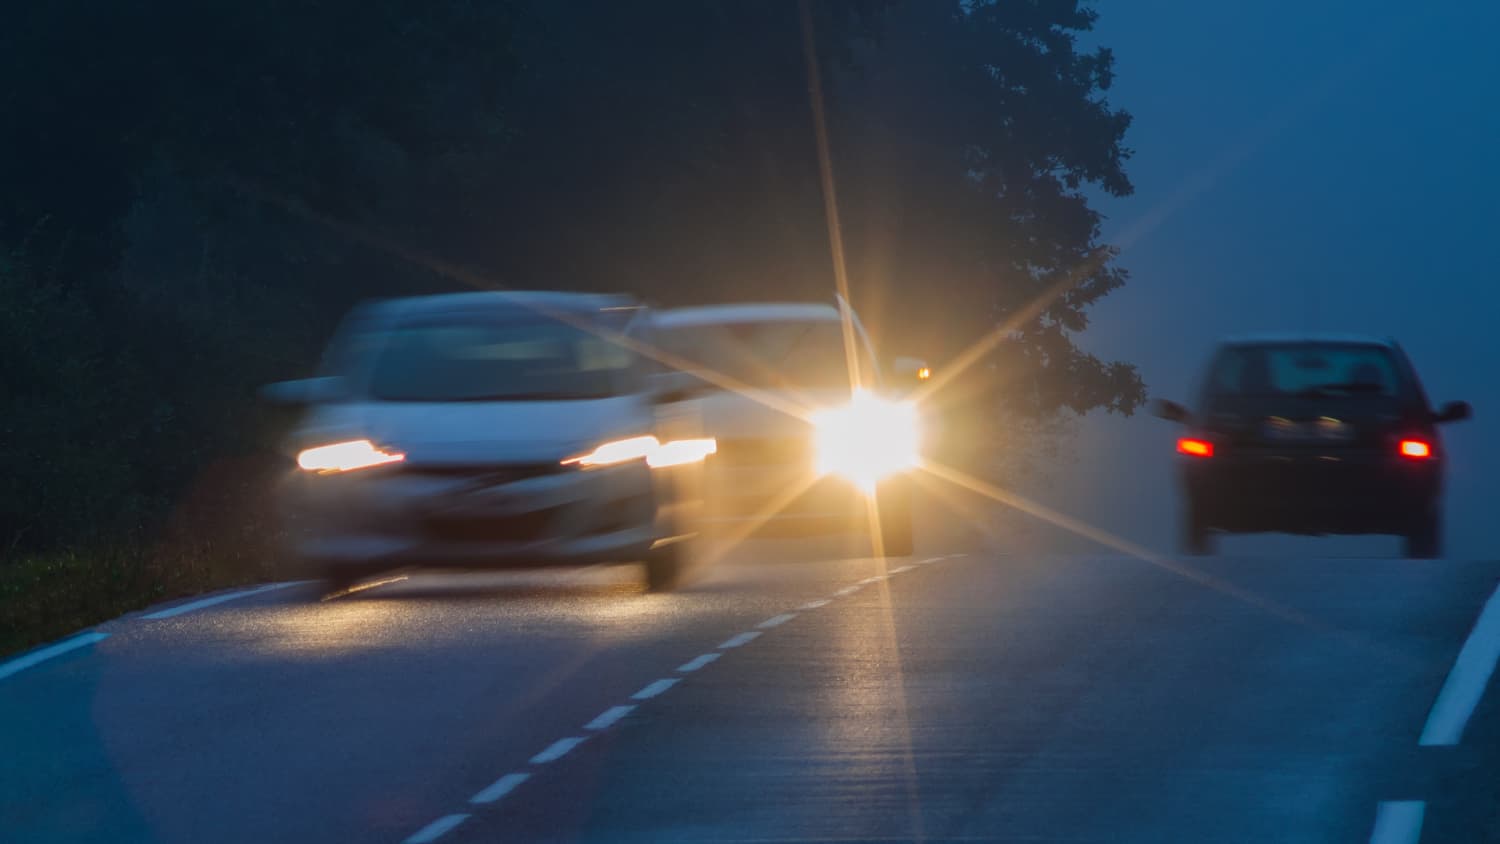 Bessere Sicht im Straßenverkehr: Die richtige Beleuchtung